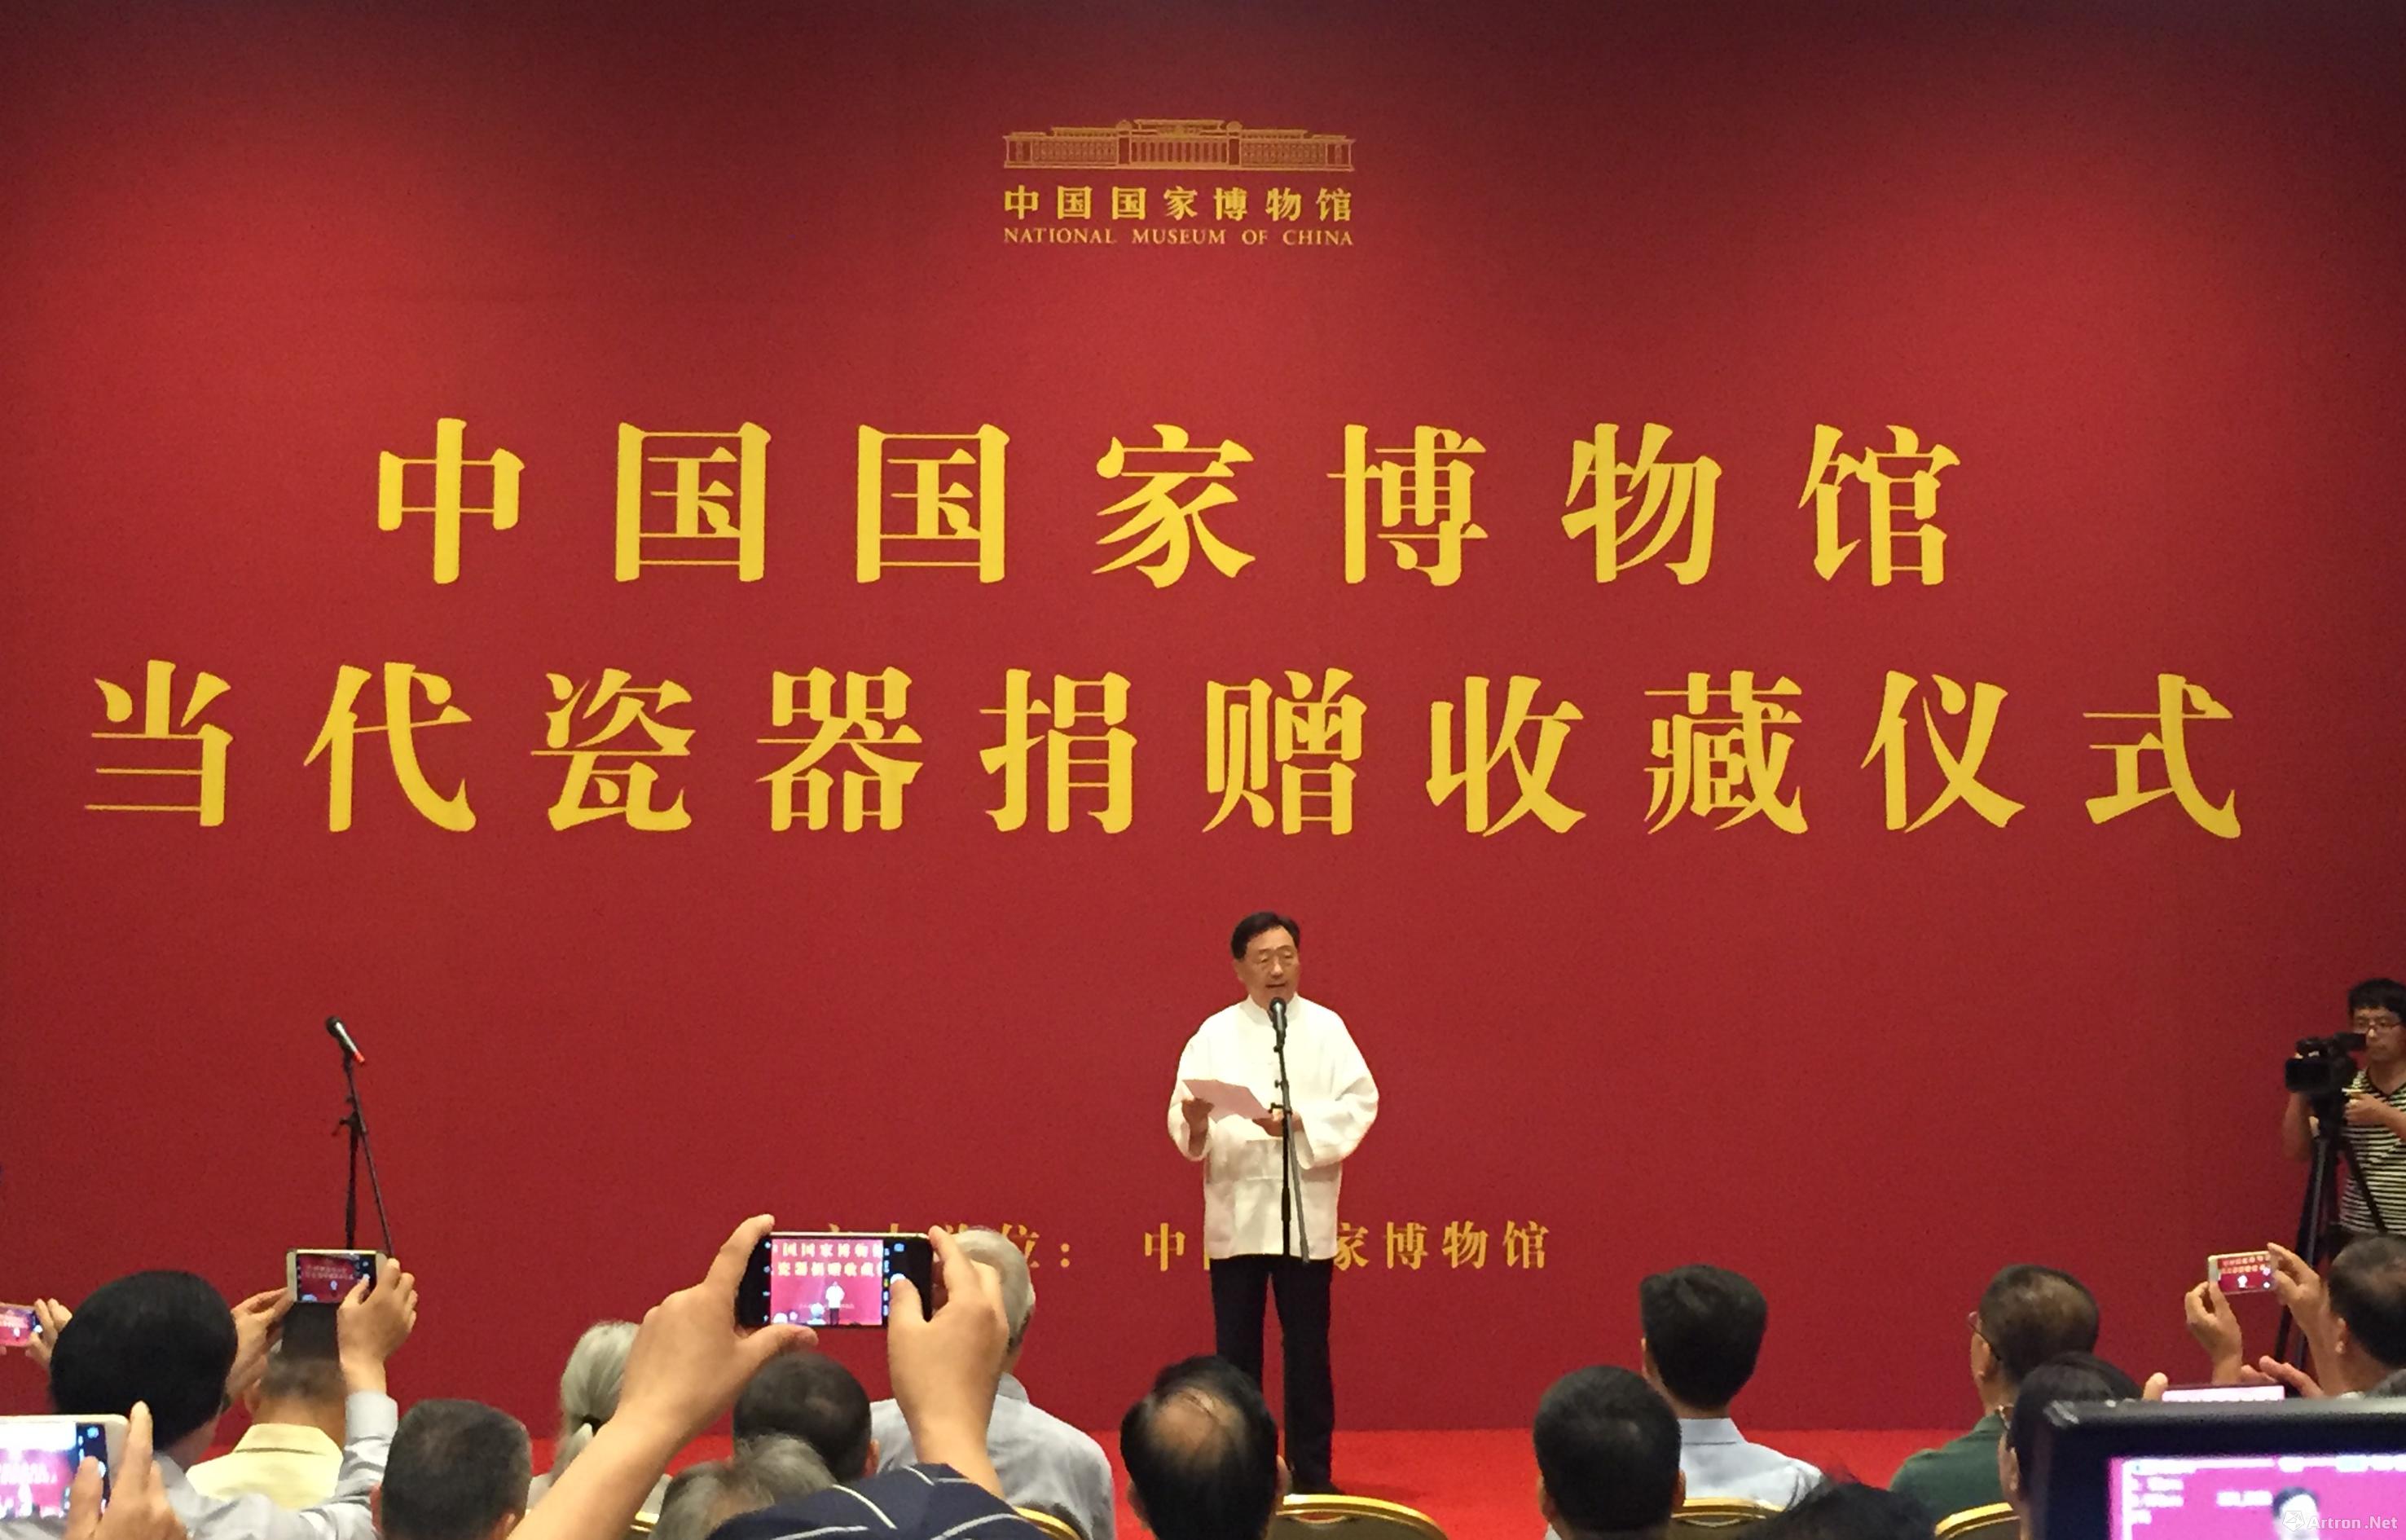 中国国家博物馆举行当代瓷器捐赠收藏仪式 以国家平台成就国家品牌